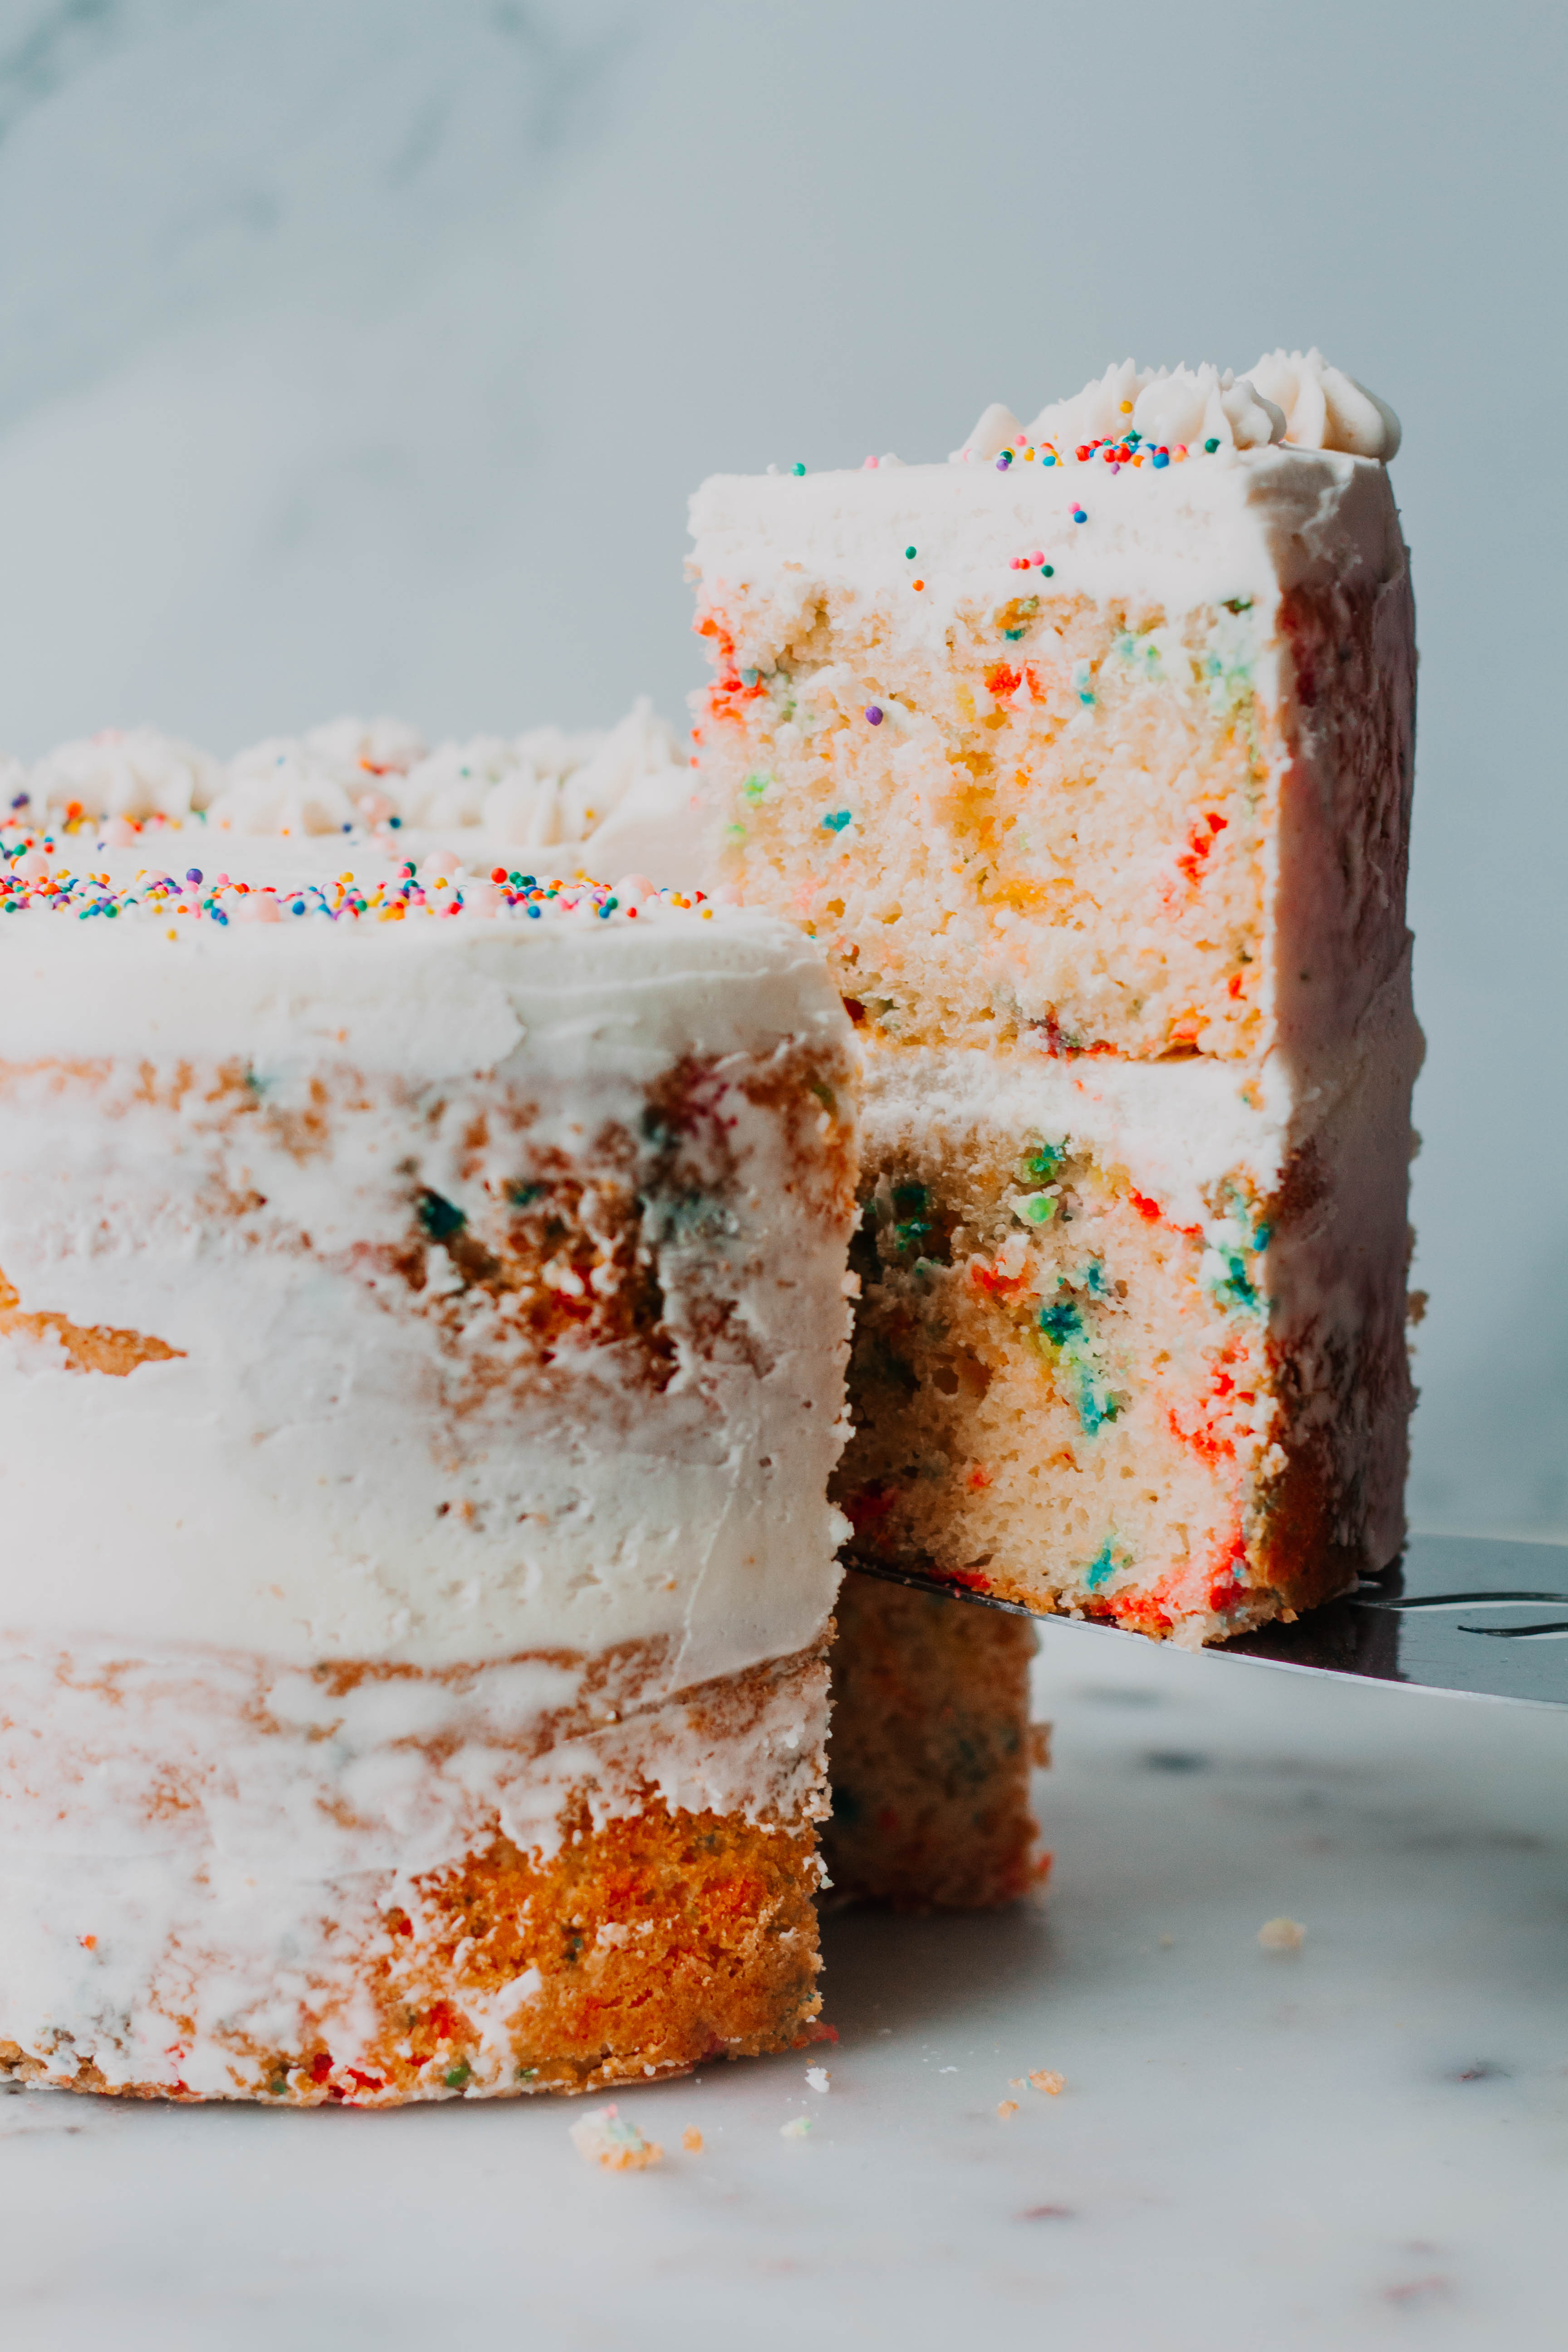 Make Boxed Cake Mix taste like Bakery cake